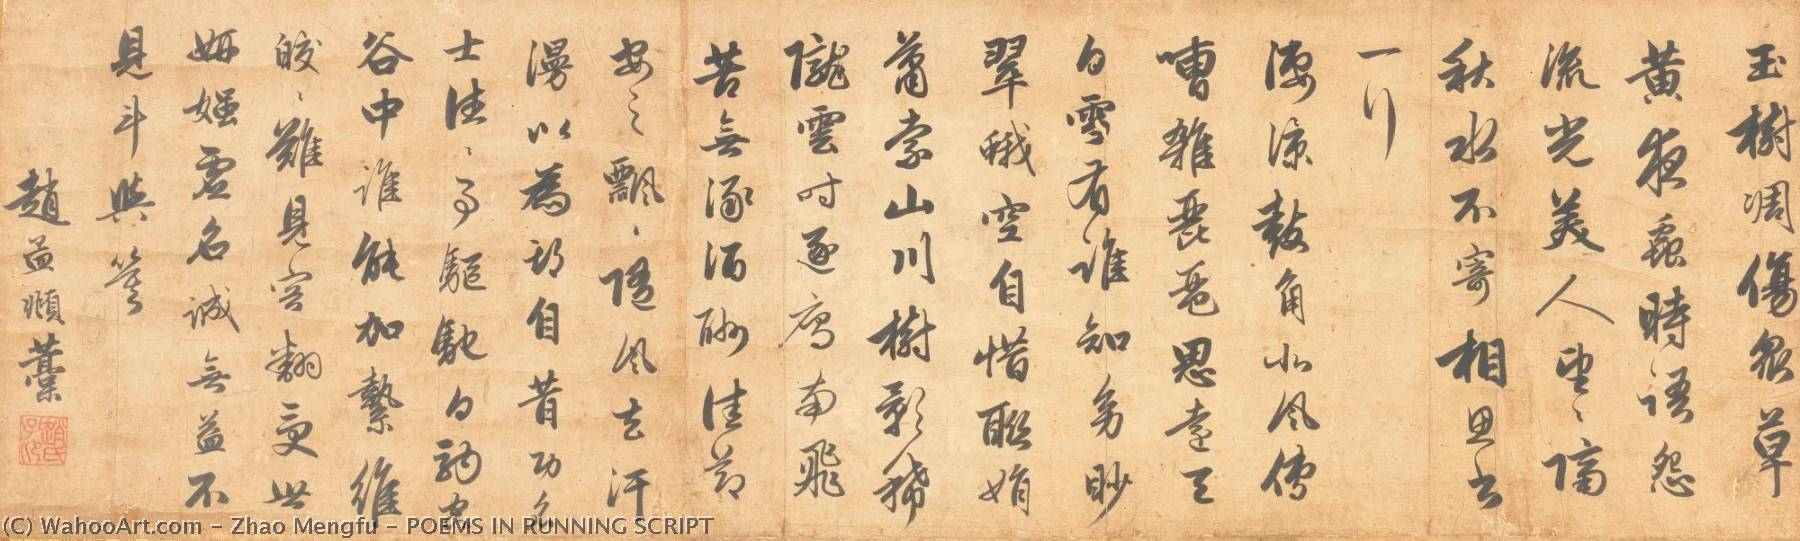 WikiOO.org - Encyclopedia of Fine Arts - Lukisan, Artwork Zhao Mengfu - POEMS IN RUNNING SCRIPT